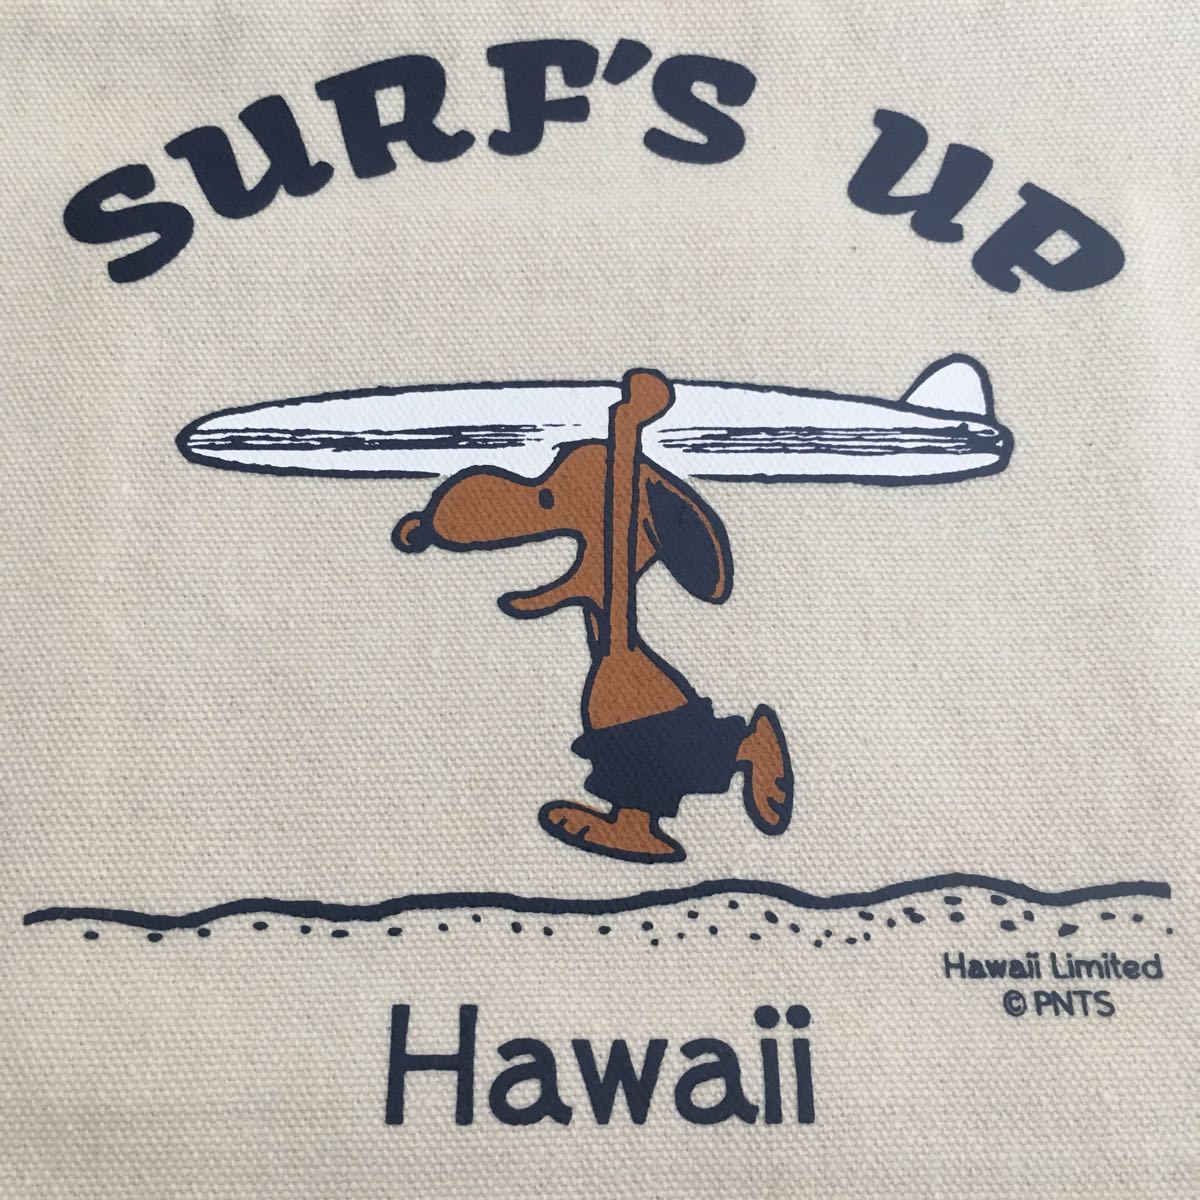 Paypayフリマ ハワイ限定 モニホノルル 日焼けスヌーピーsurf S Up ハンドバッグポーチ